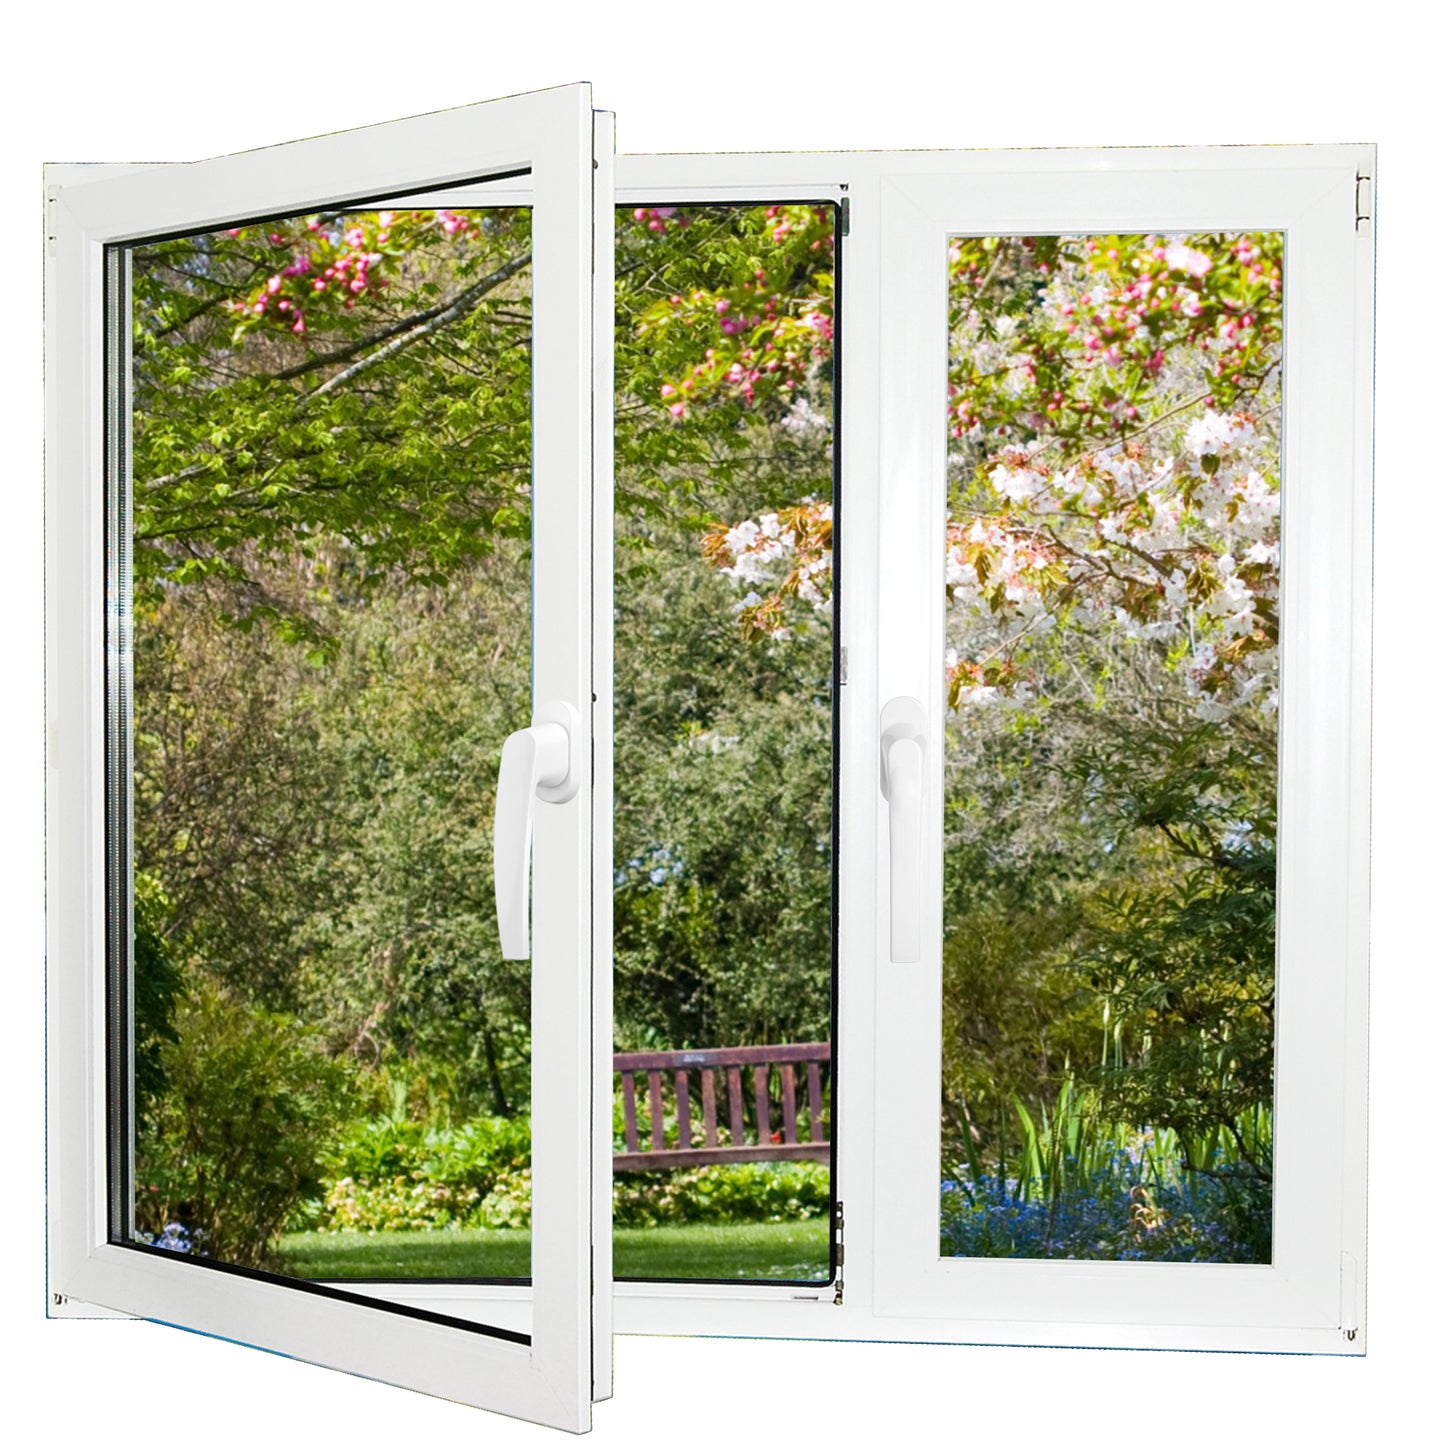 Poignée en aluminium de qualité PALMAT pour fenêtre | pour fenêtres / portes battantes et coulissantes | Ouverture vers l'intérieur ou vers l'extérieur